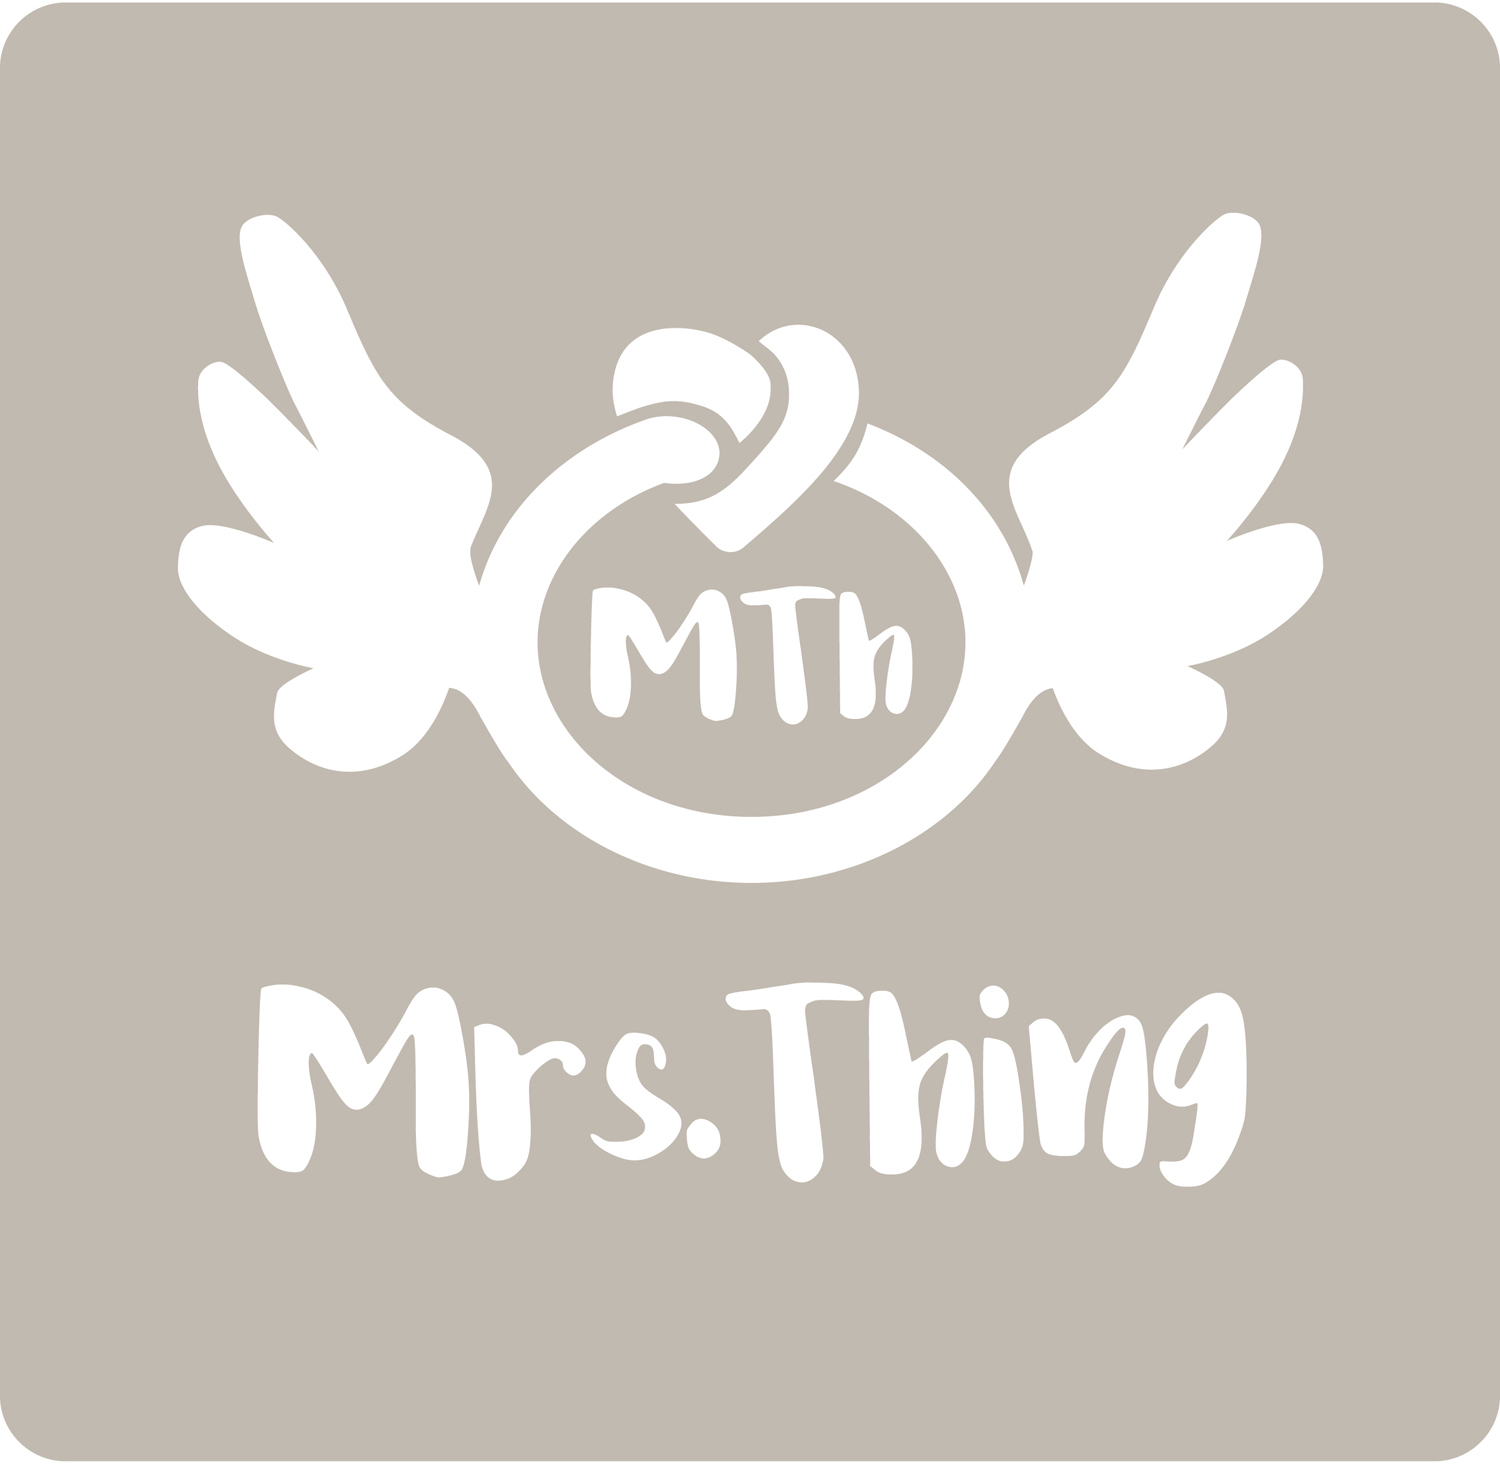 Mrs. Thing